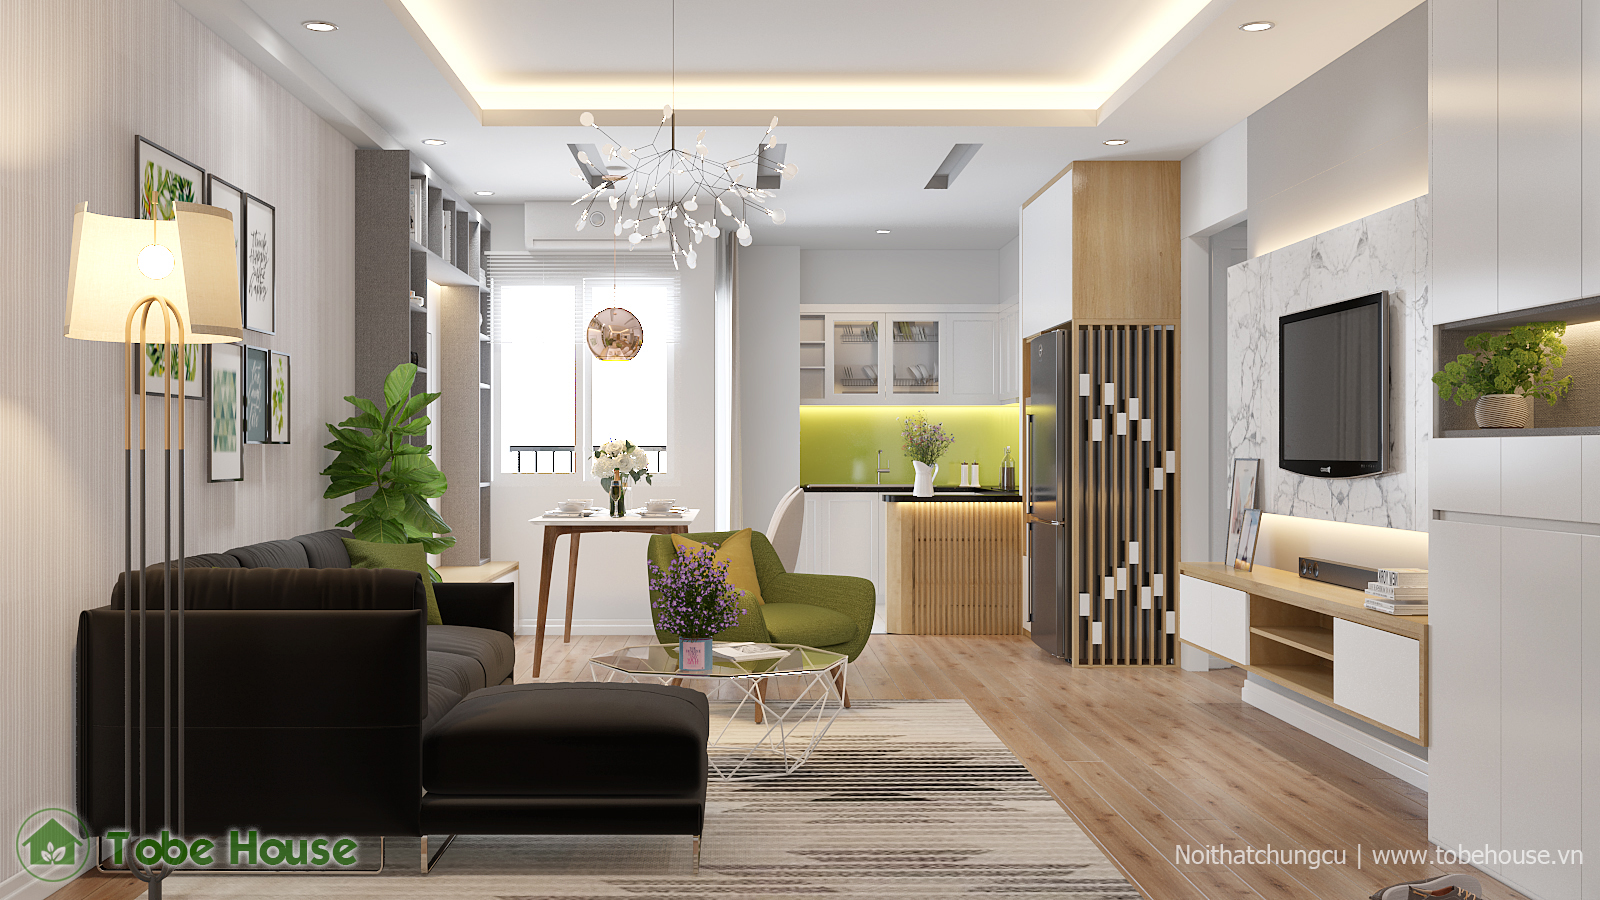 Chung cư Green House - Việt Hưng mang đến một không gian sống đích thực cho cư dân. Thiết kế nội thất mới nhất làm cho căn hộ sống động và hiện đại hơn bao giờ hết, và tối ưu hóa không gian cho sự tiện nghi và thoải mái. Hãy nhấn vào hình ảnh để chiêm ngưỡng những thiết kế nội thất phong cách này!